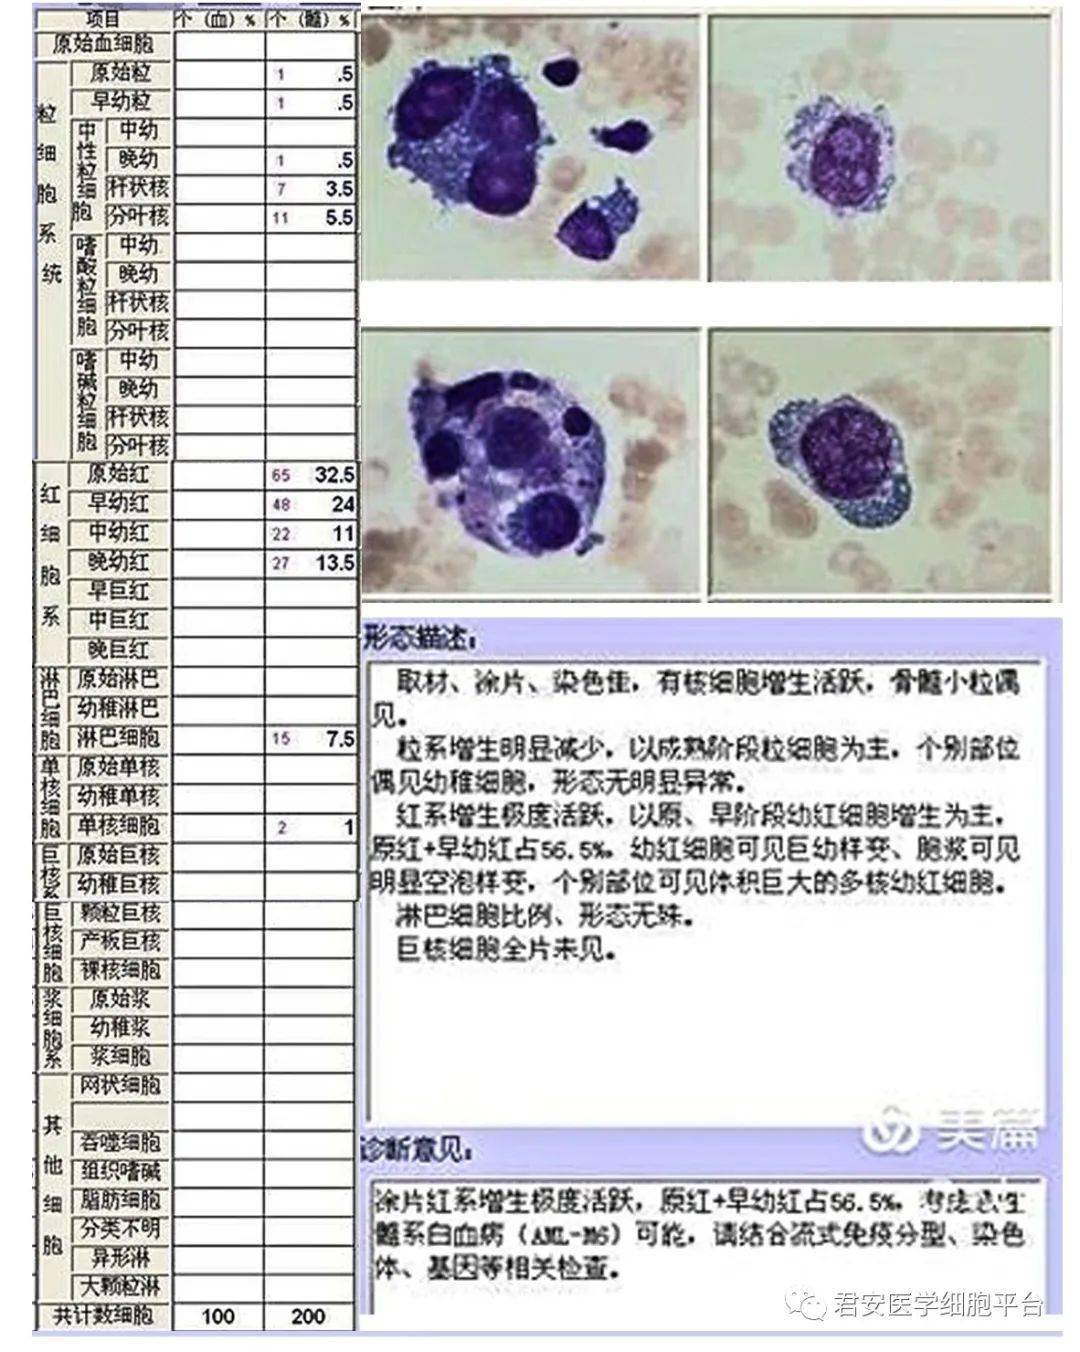 白血病骨髓报告单图片